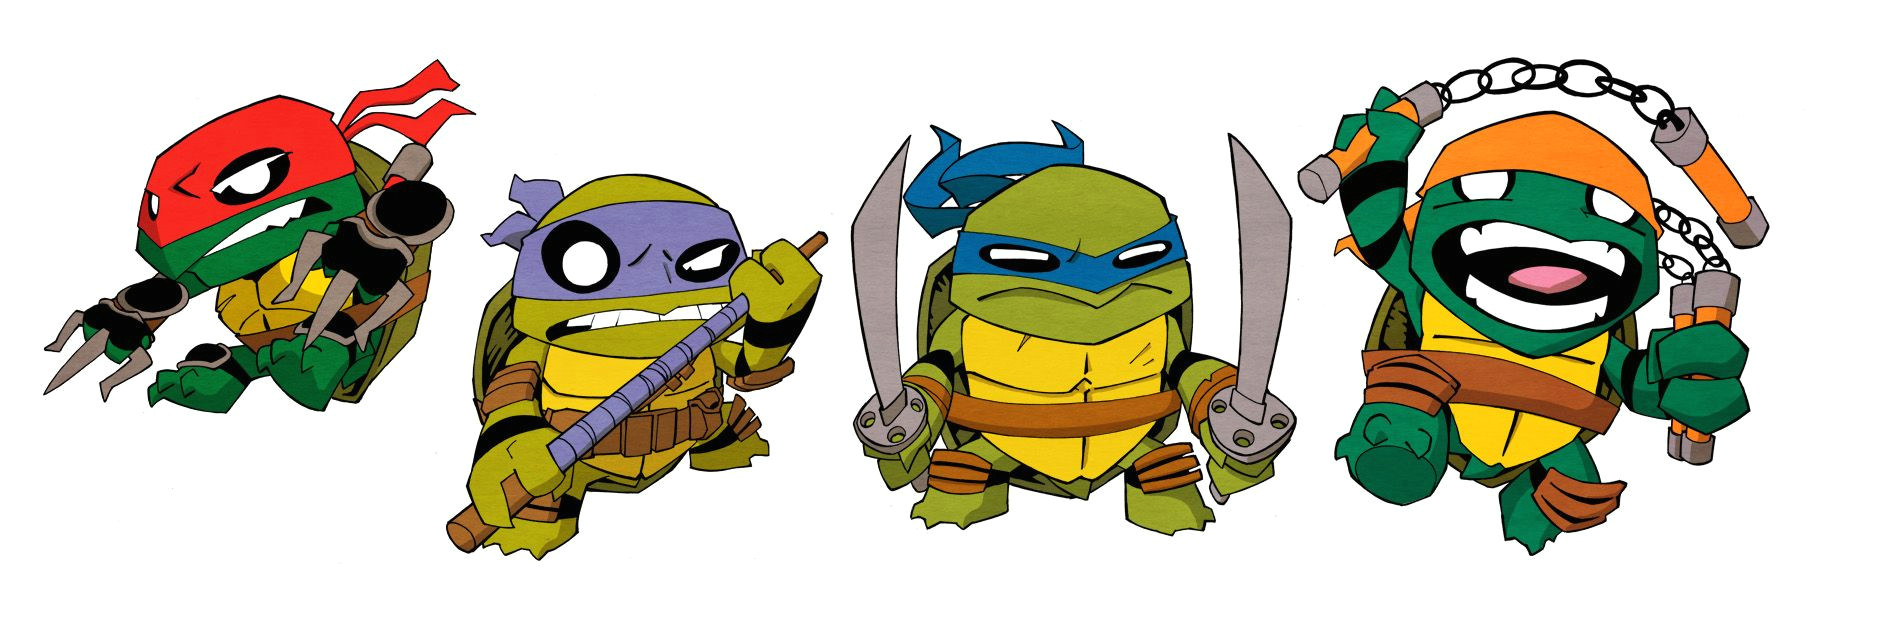 Teenage Mutant Ninja Turtles Drawings Easy Step by Step Teenage Mutant Ninja Turtles Little Big Head by Agentbill